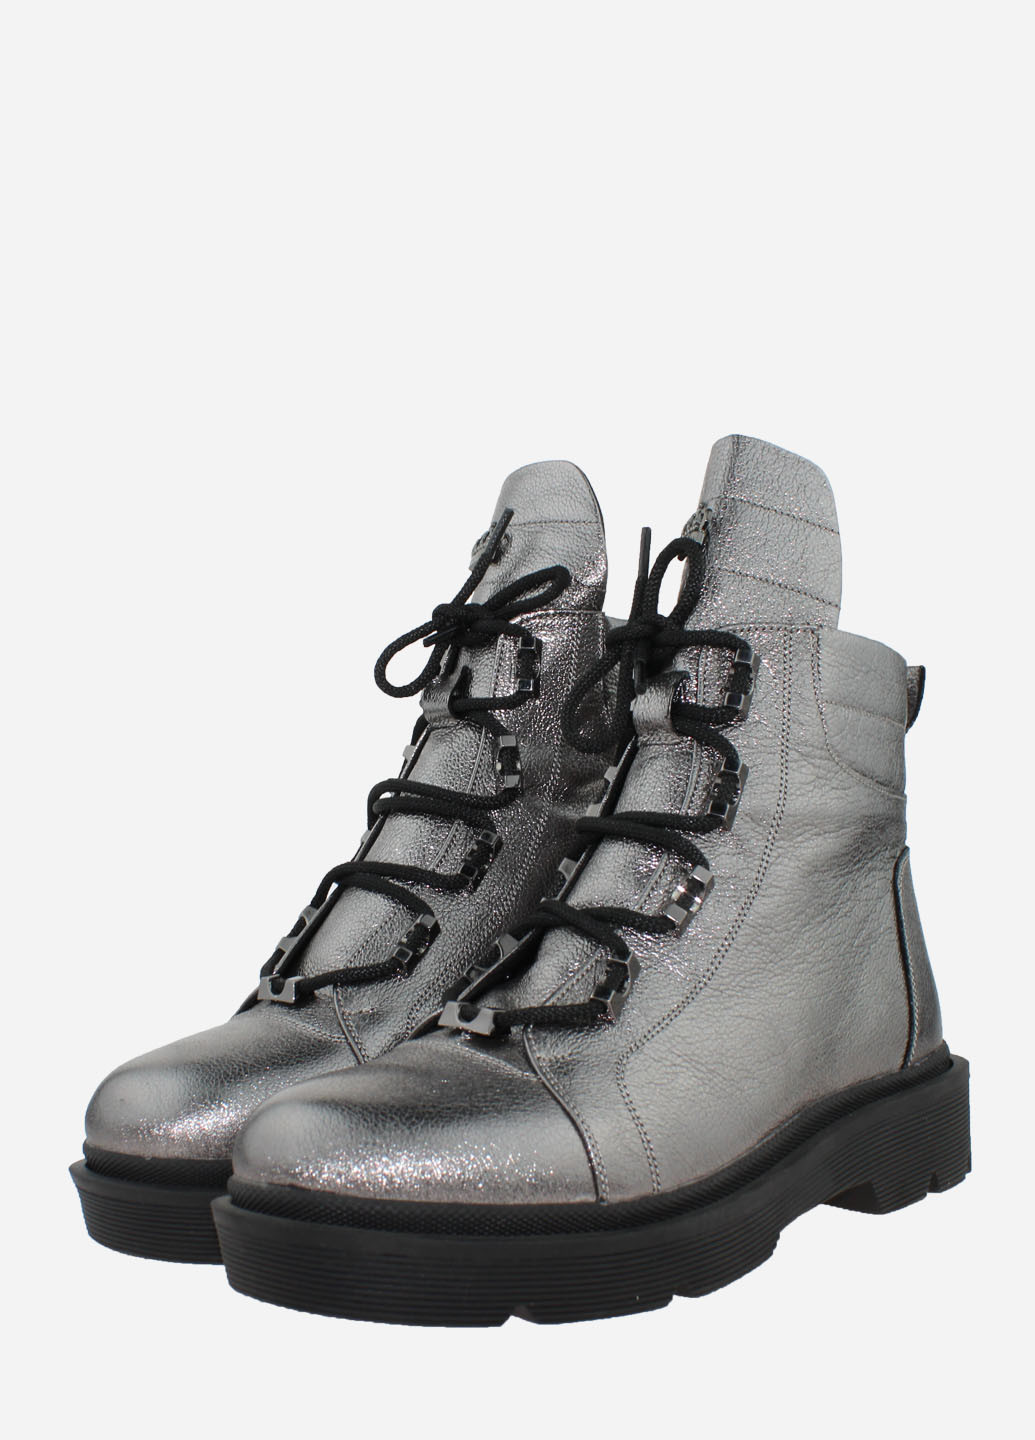 Зимние ботинки re2473 серебро El passo